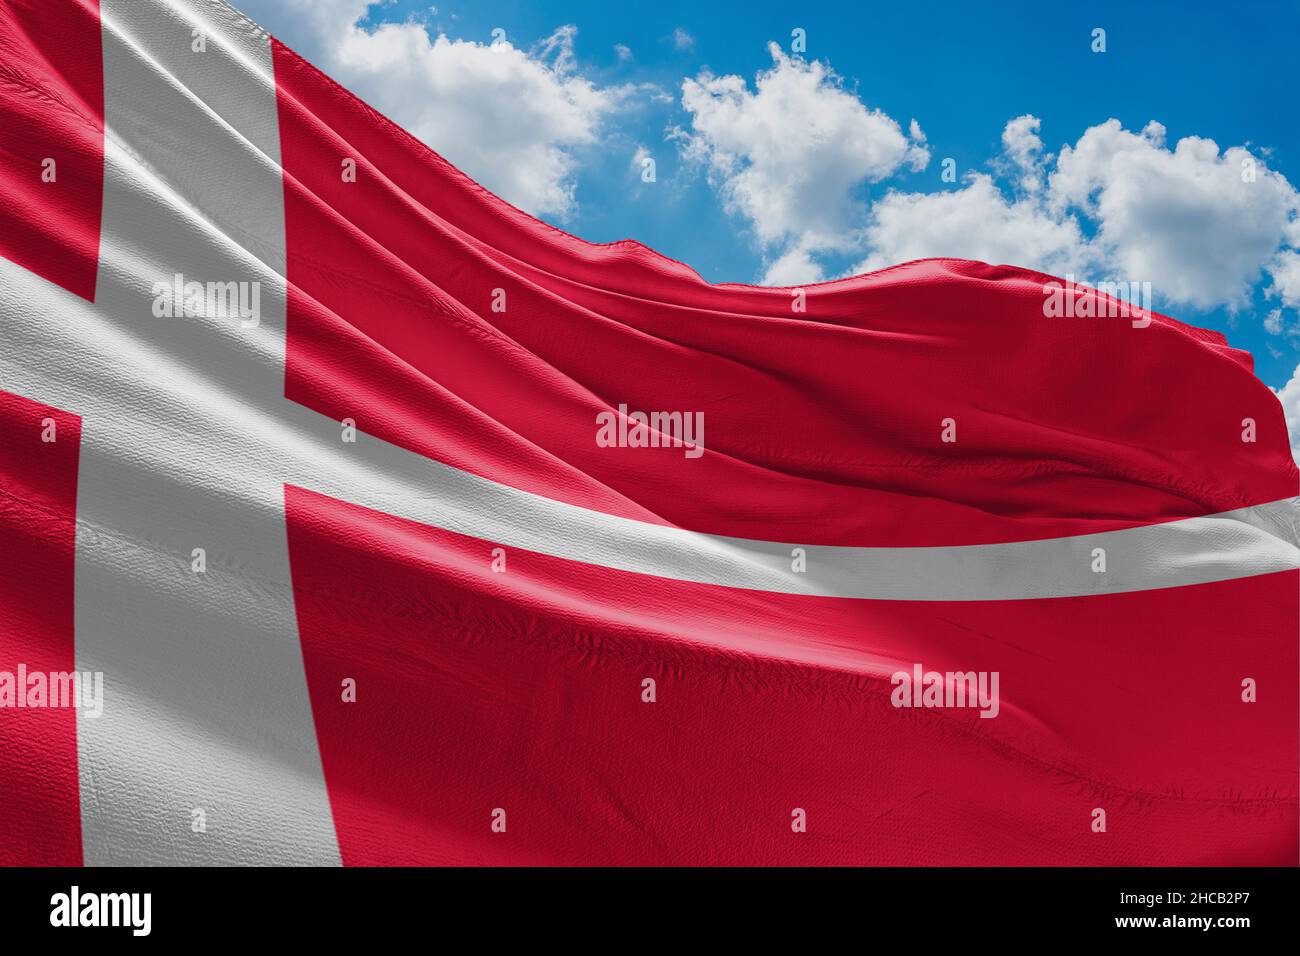 Drapeau du Danemark le drapeau du Danemark est rouge avec une croix scandinave blanche qui s'étend jusqu'aux bords du drapeau; Banque D'Images